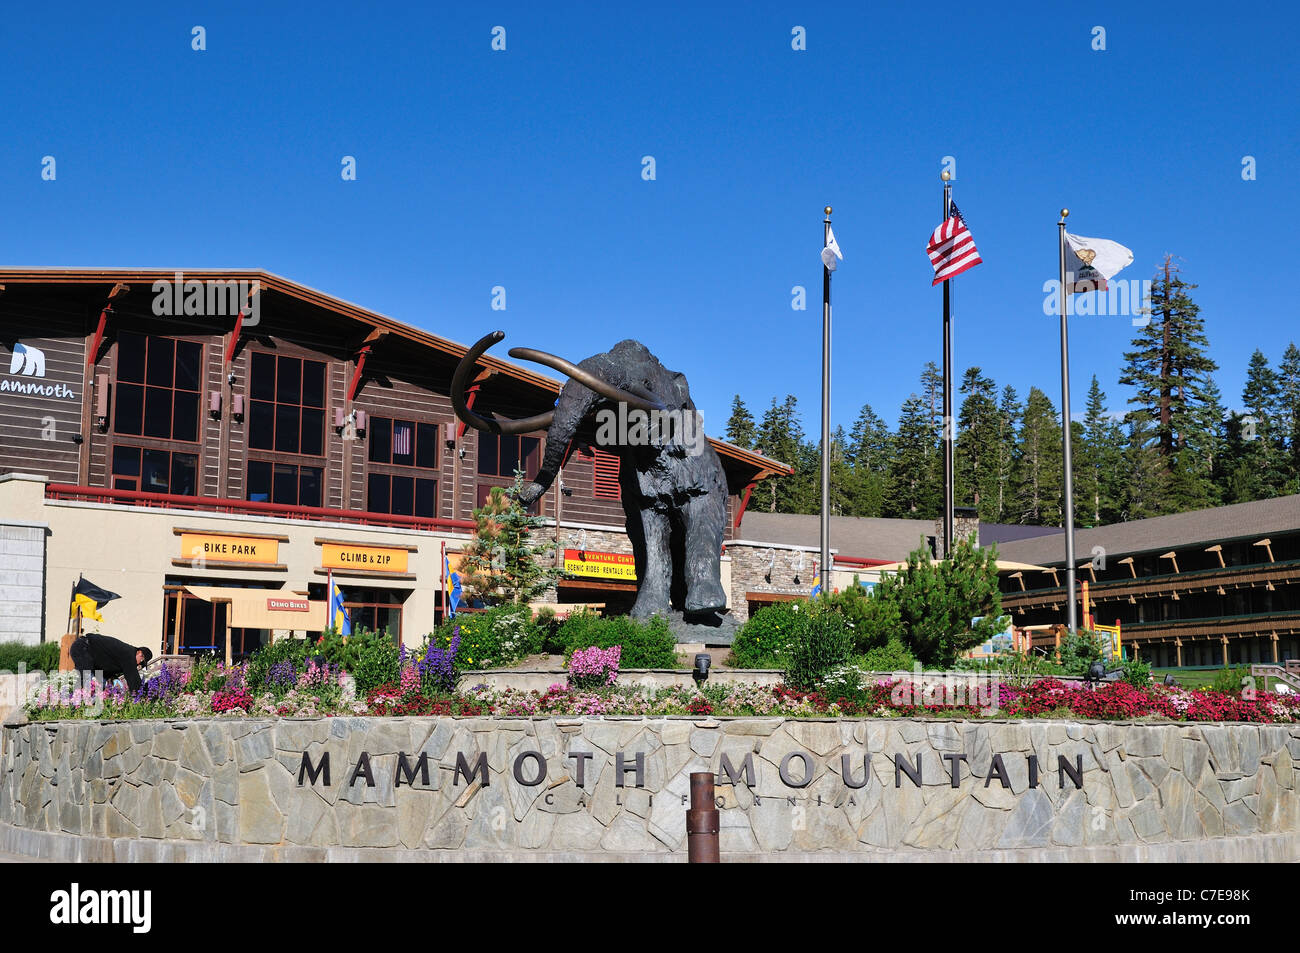 Una statua di bronzo di gigante mammoth sorge nella parte anteriore del Centro Visita di Mammoth Mountain, California, Stati Uniti d'America. Foto Stock